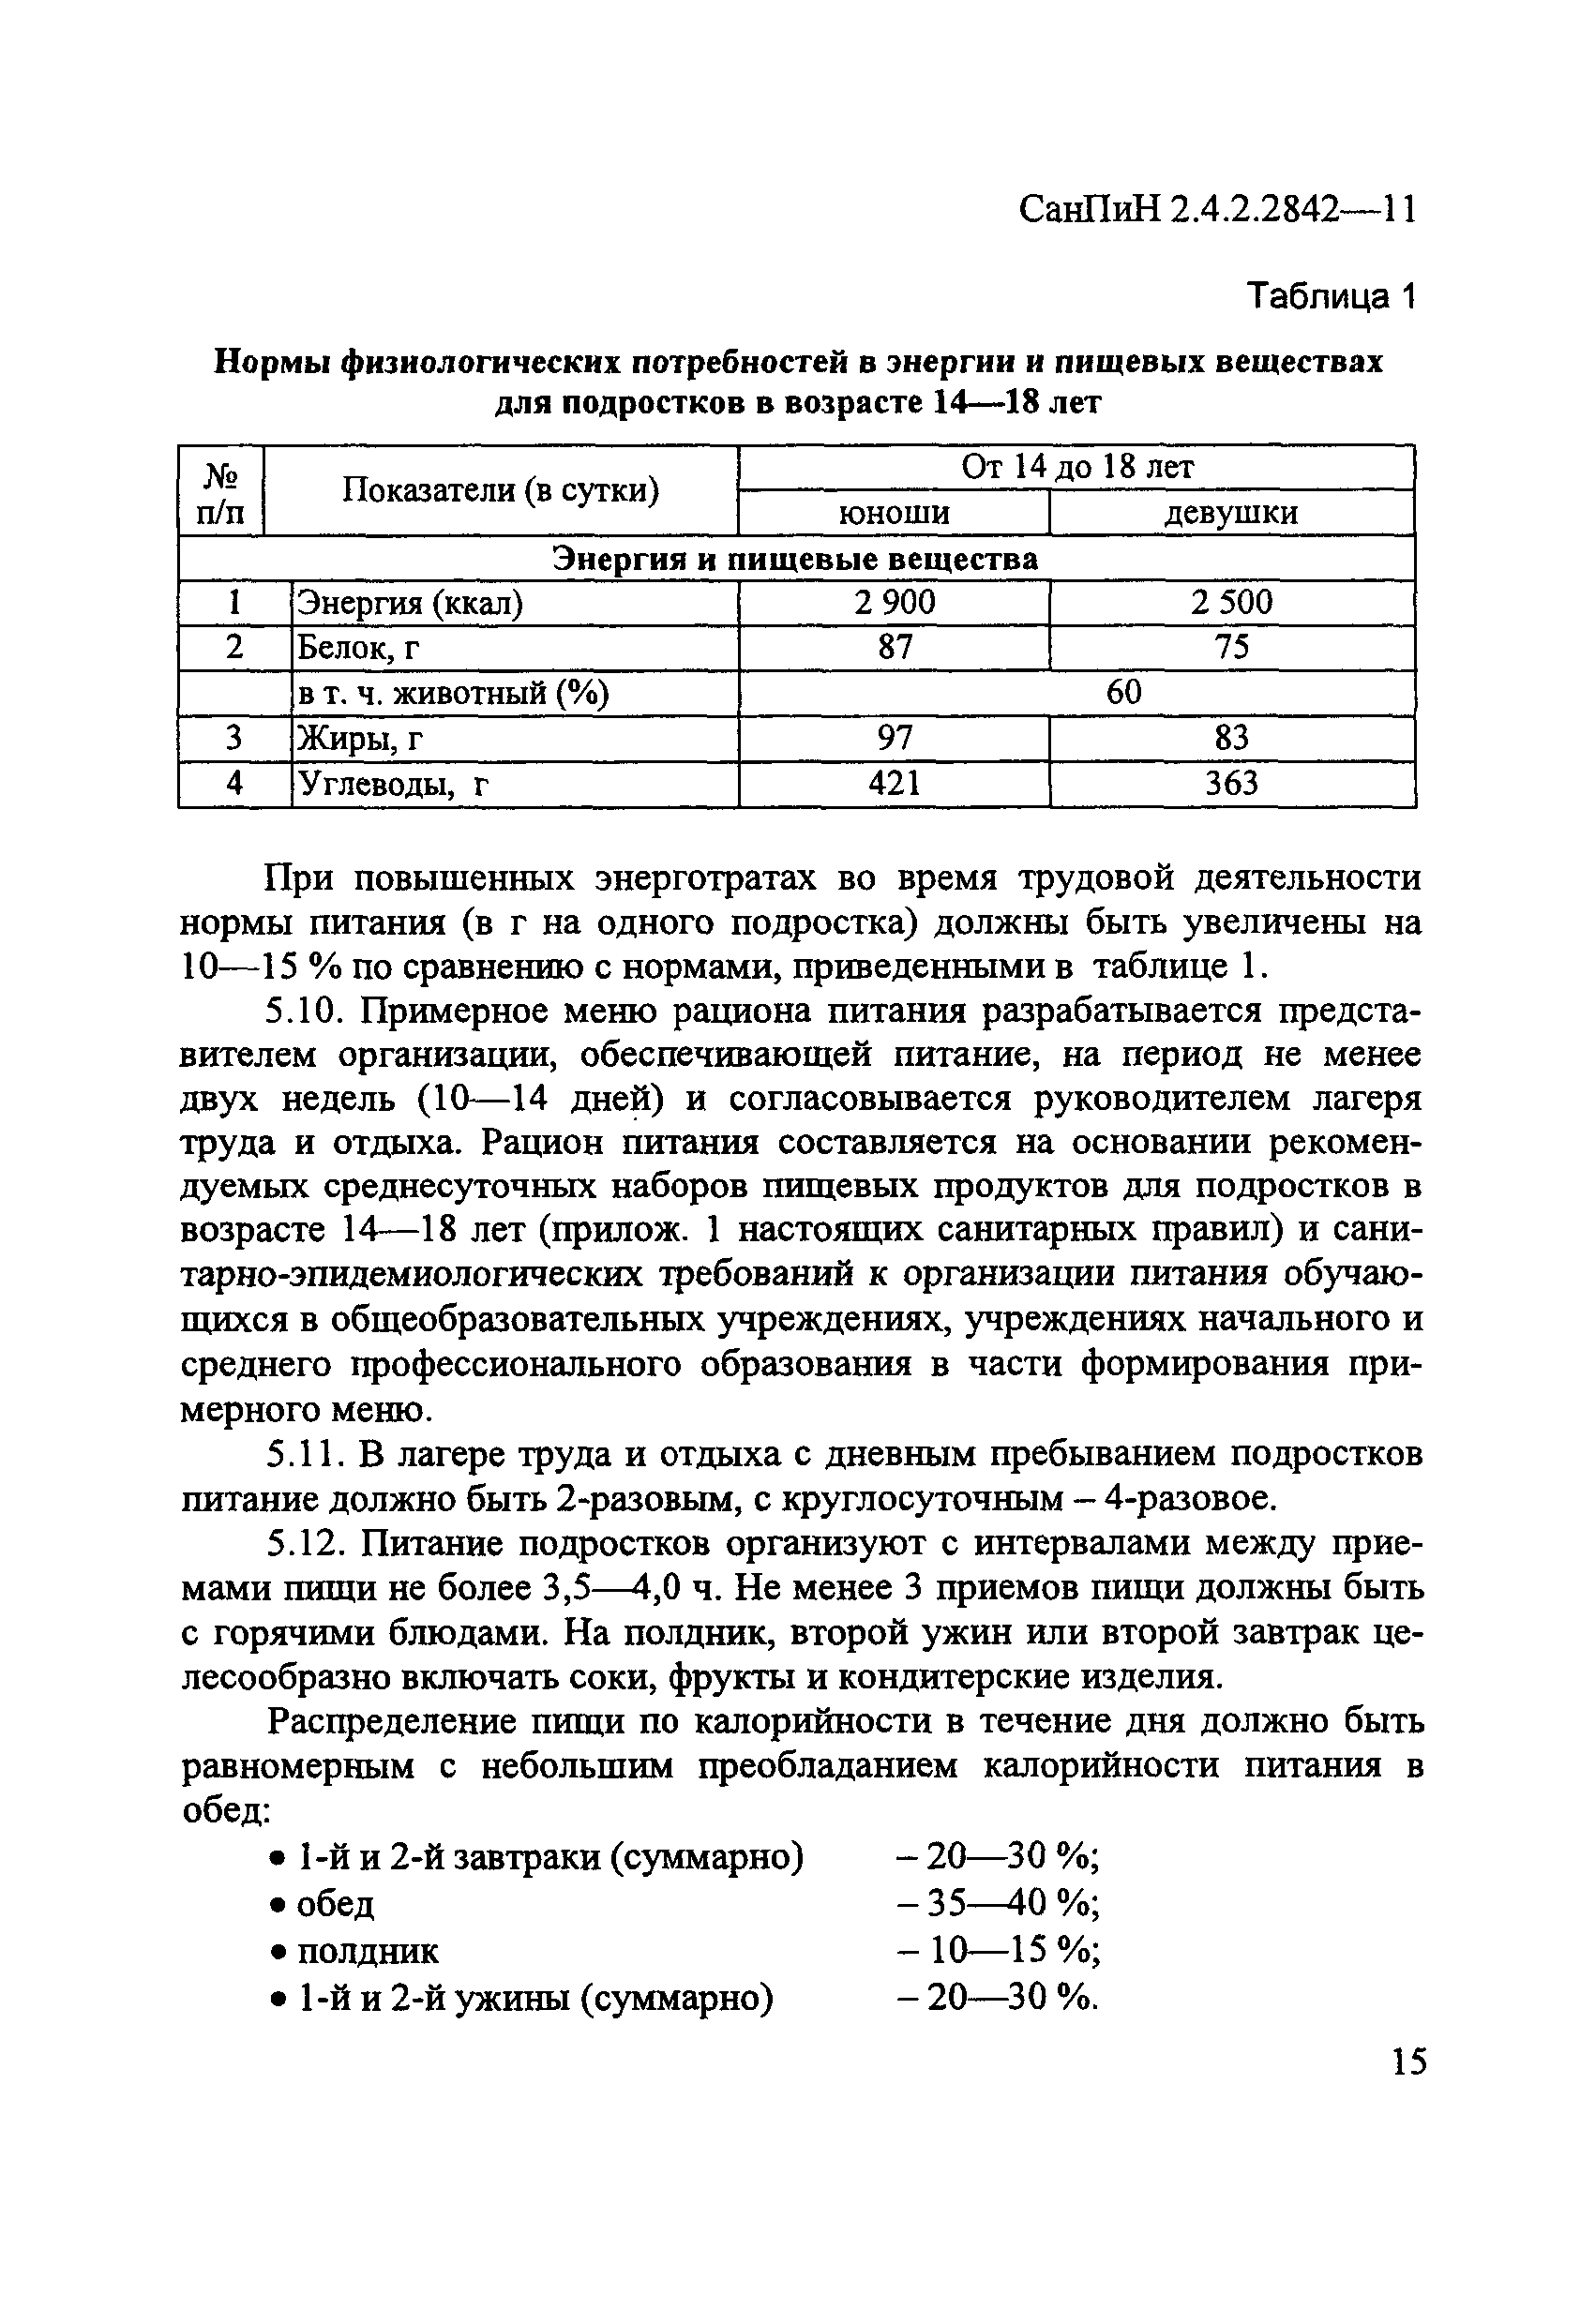 СанПиН 2.4.2.2842-11